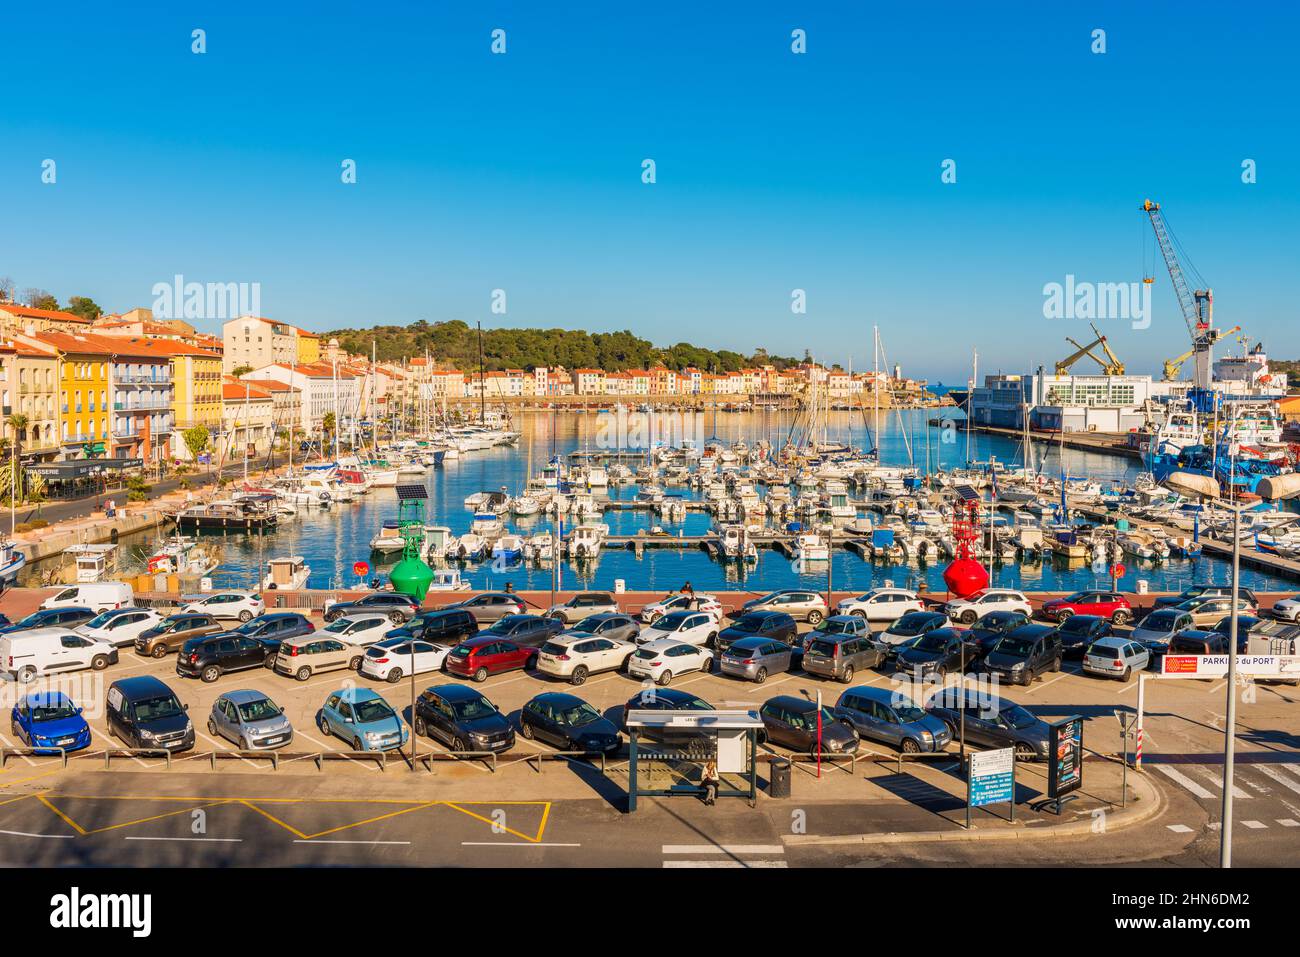 Blick auf Port-Vendres und seinen Hafen. Port-Vendres liegt in der Nähe der spanischen Grenze im Südwesten Frankreichs. Stockfoto